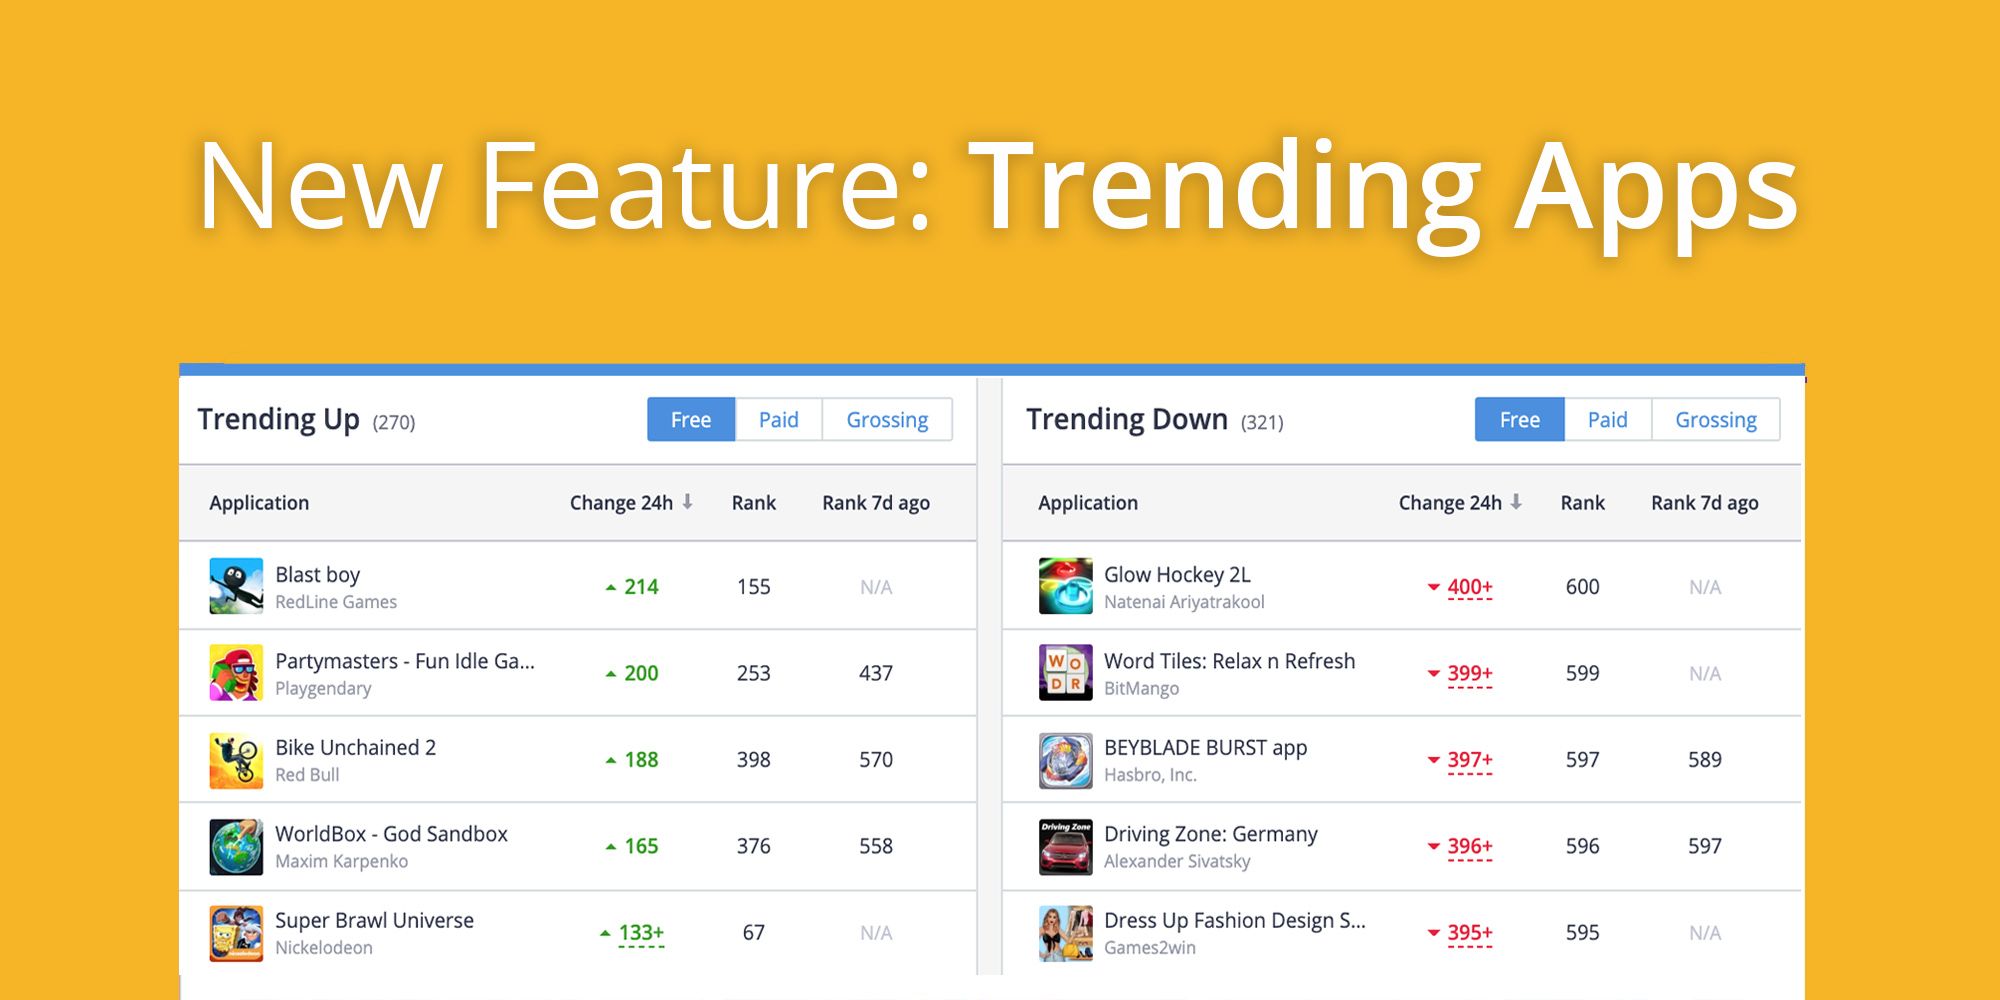 New Feature in Apptica: Trending Apps